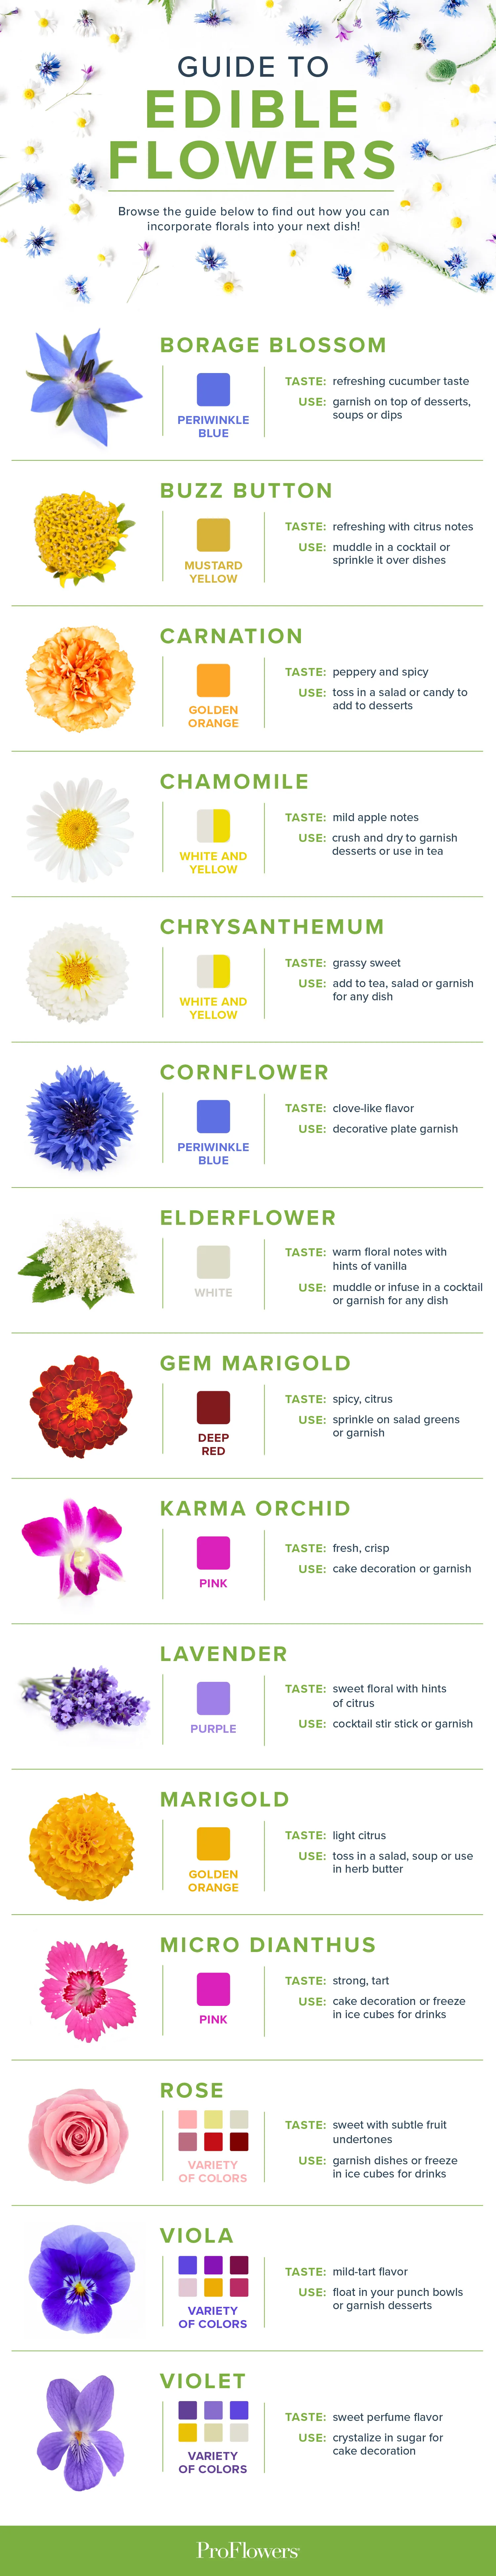 edible-flowers-IG-FLOWERS